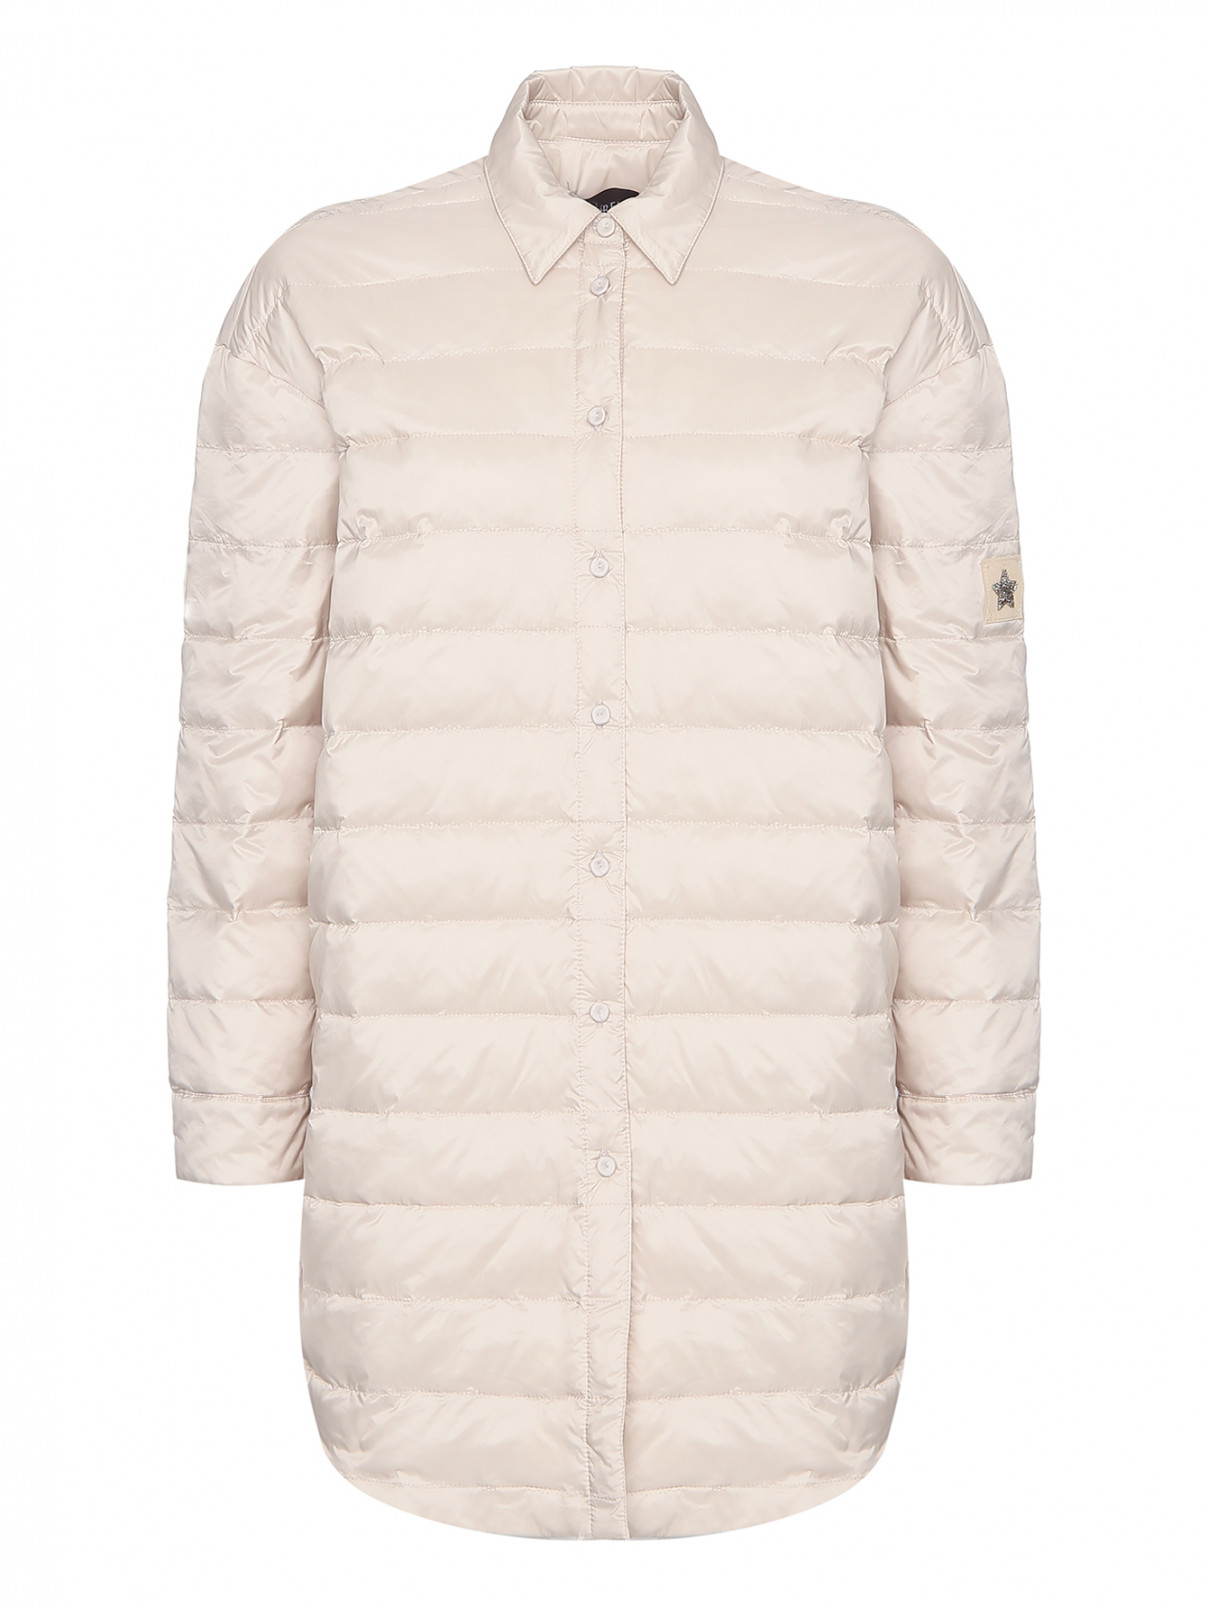 Удлиненная стеганая куртка Lorena Antoniazzi  –  Общий вид  – Цвет:  Белый